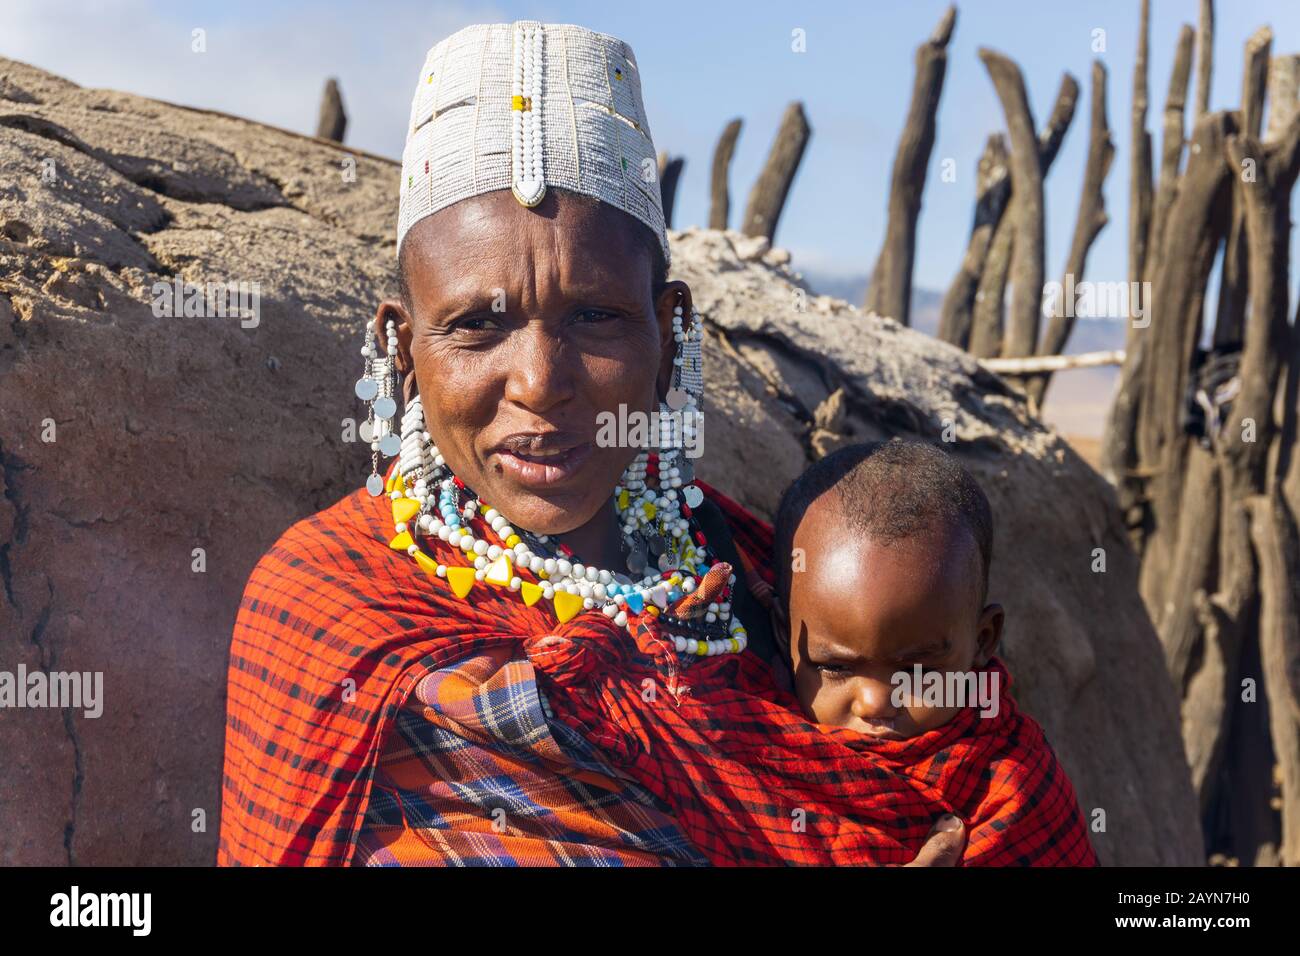 Ngorongoro, TANZANIE - 16 AOÛT 2019: Femme africaine masai avec bébé dans un village Masai traditionnel près d'Arusha, Tanzanie Banque D'Images